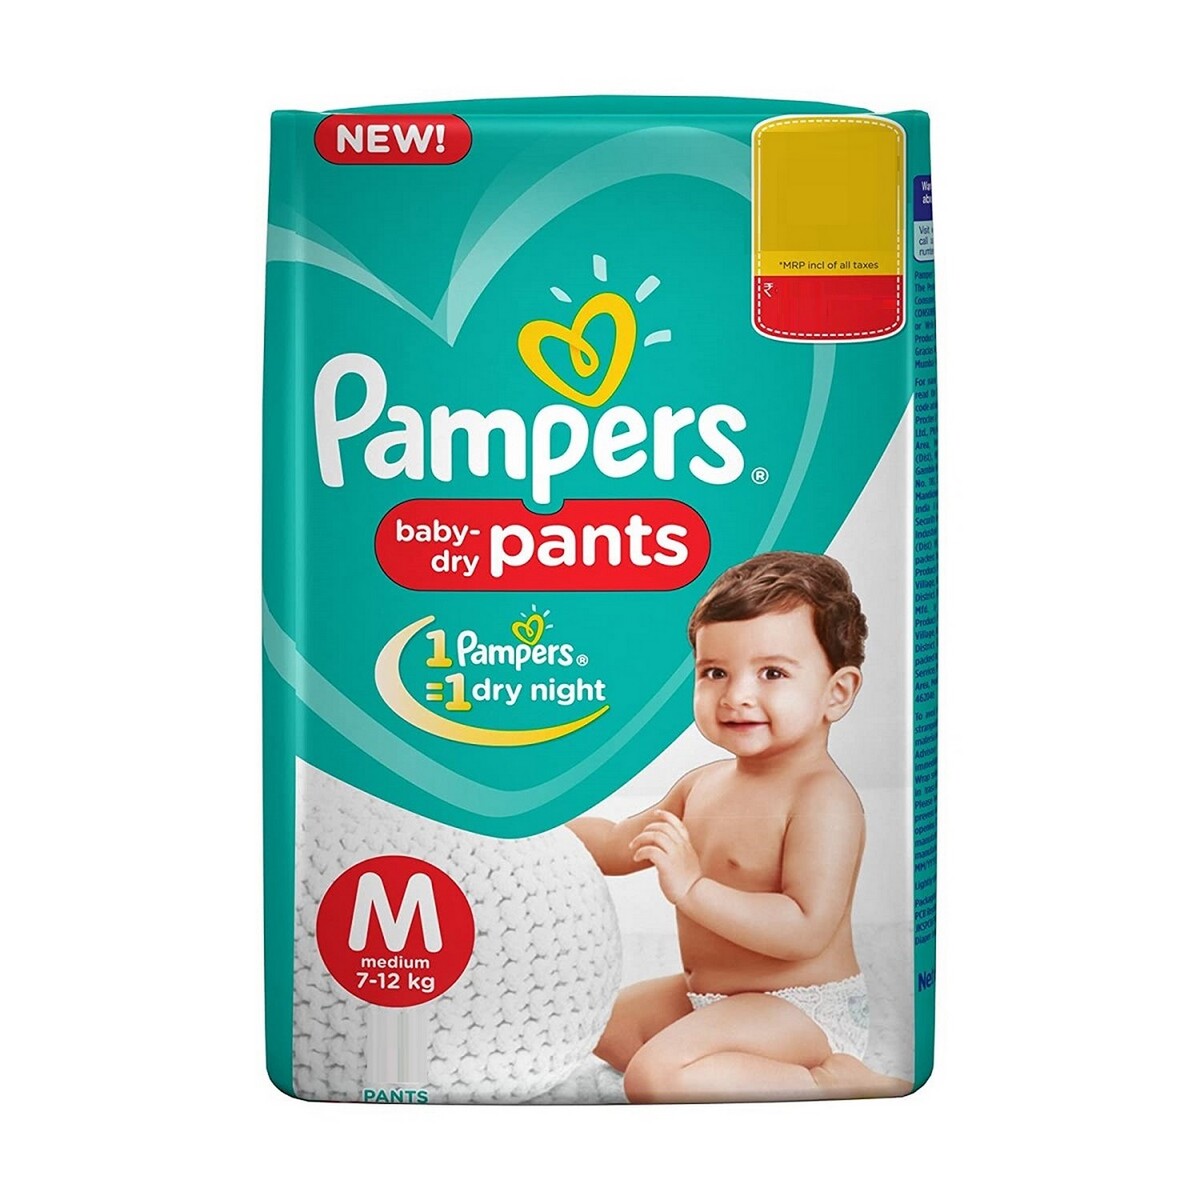 Pampers Diaper Pants Medium 11s